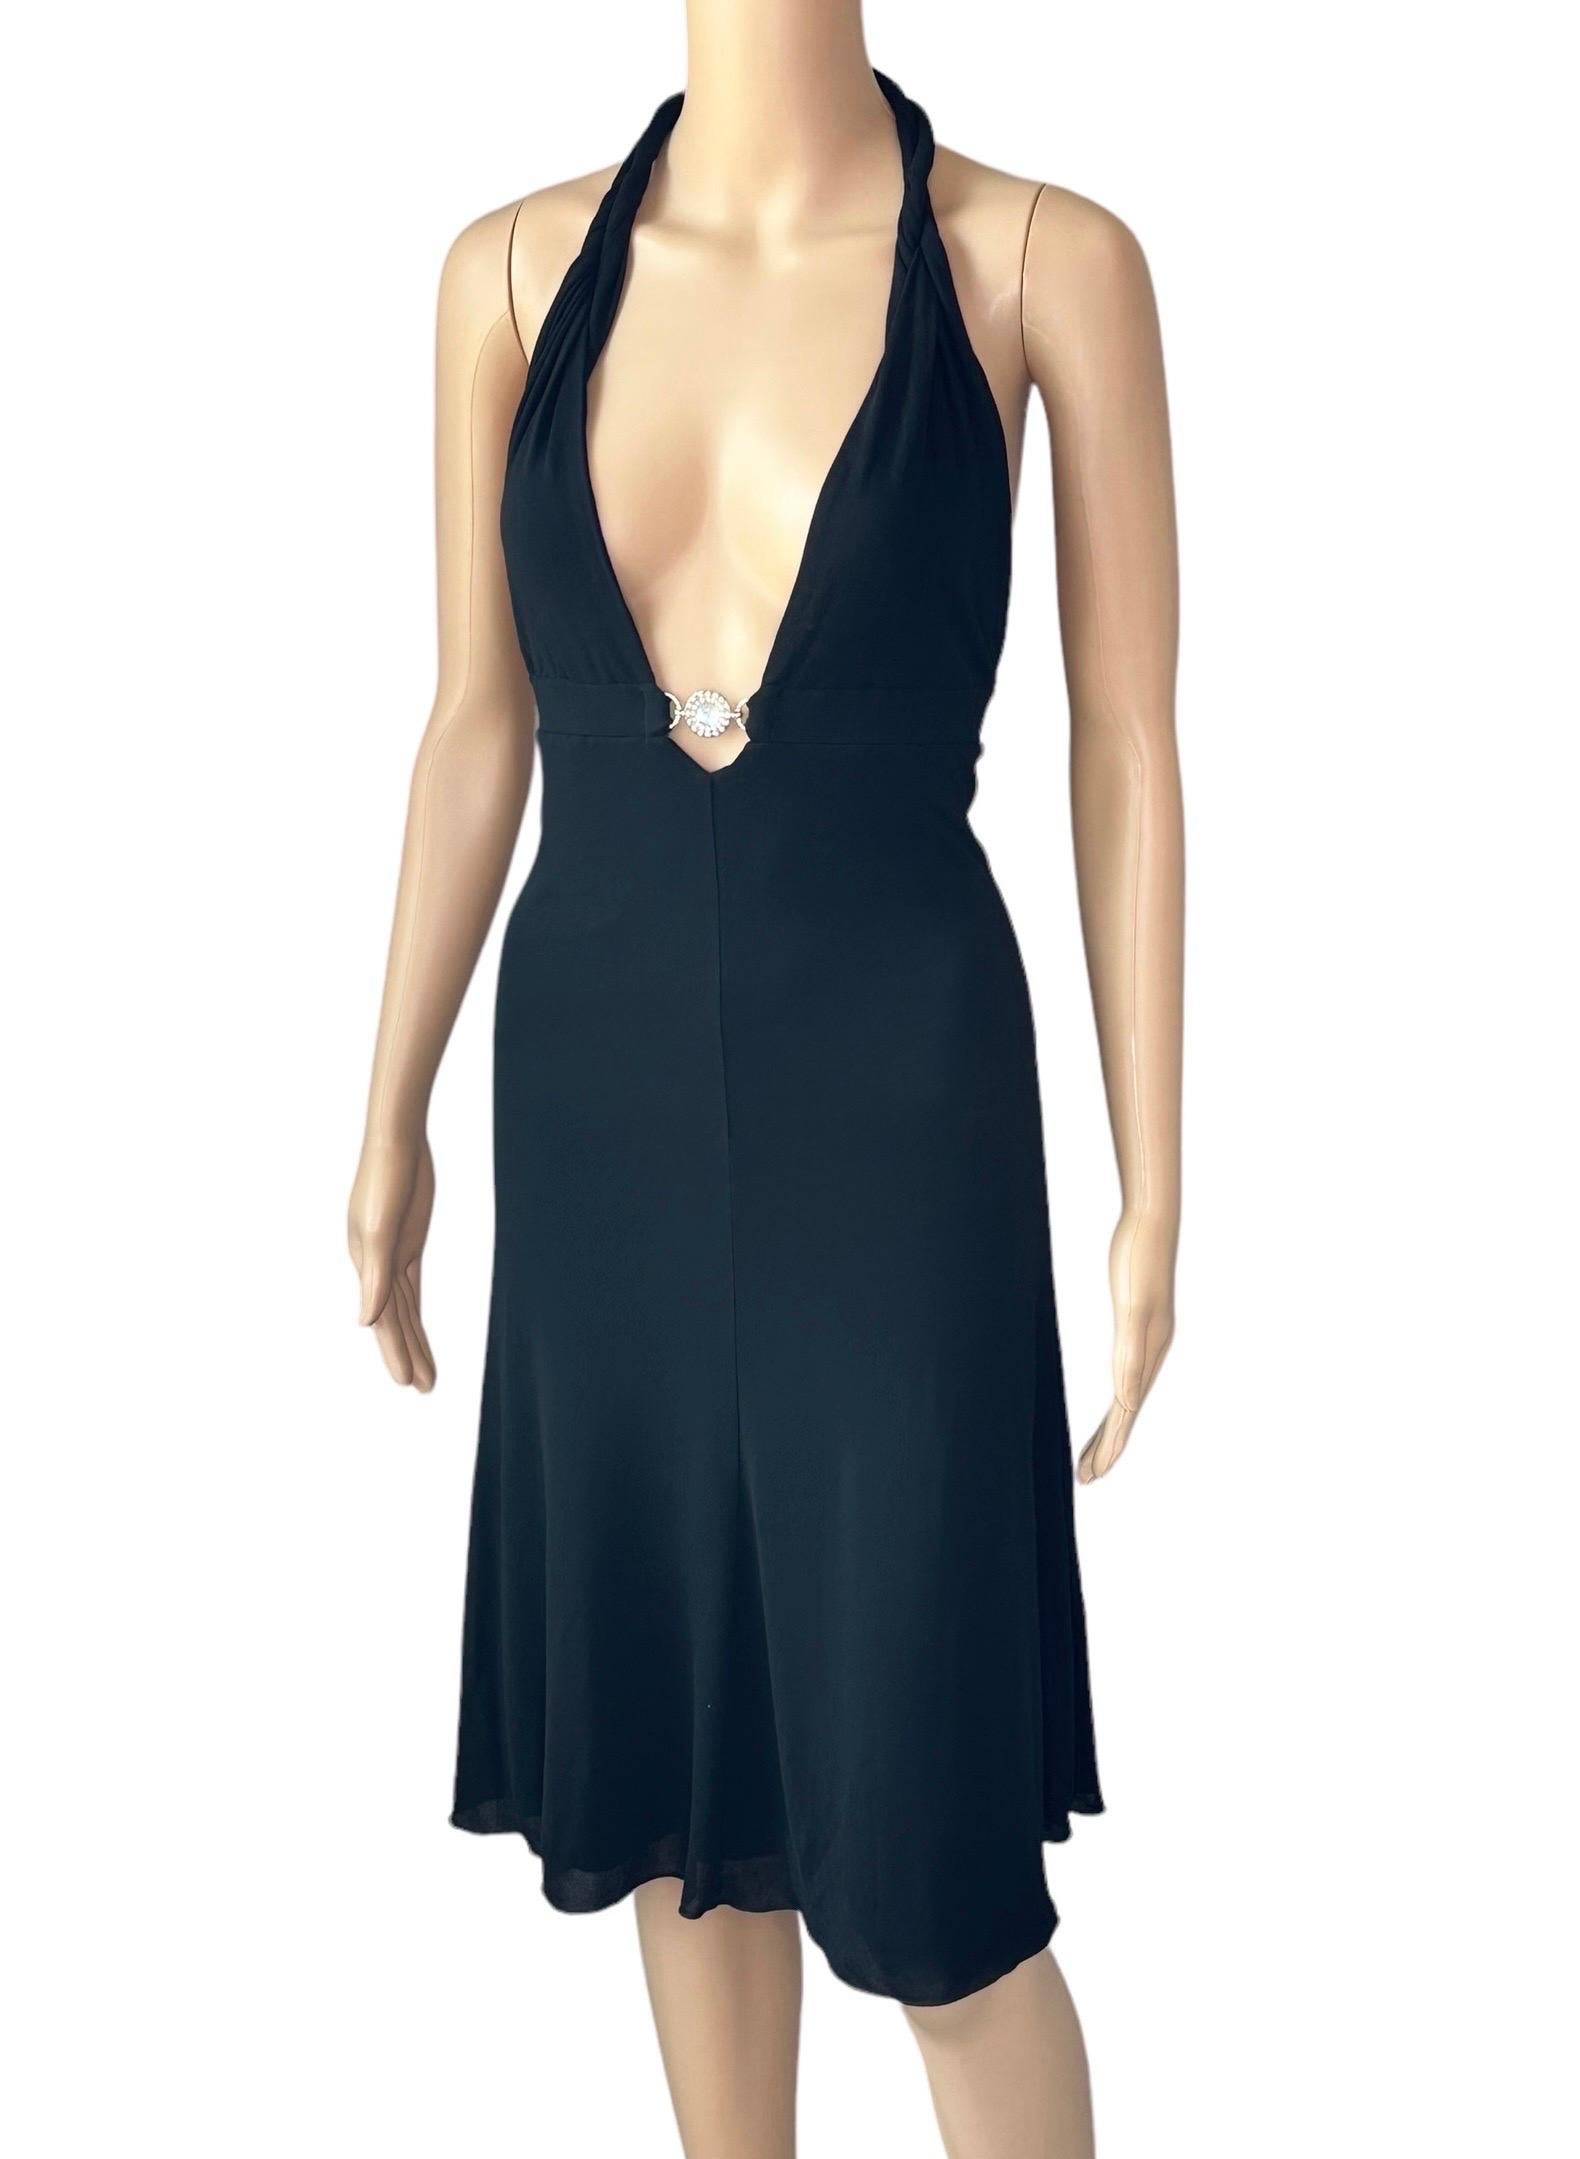 Versace S/S 2007 Crystal Logo Plunging Neckline Backless Halter Black Dress For Sale 3